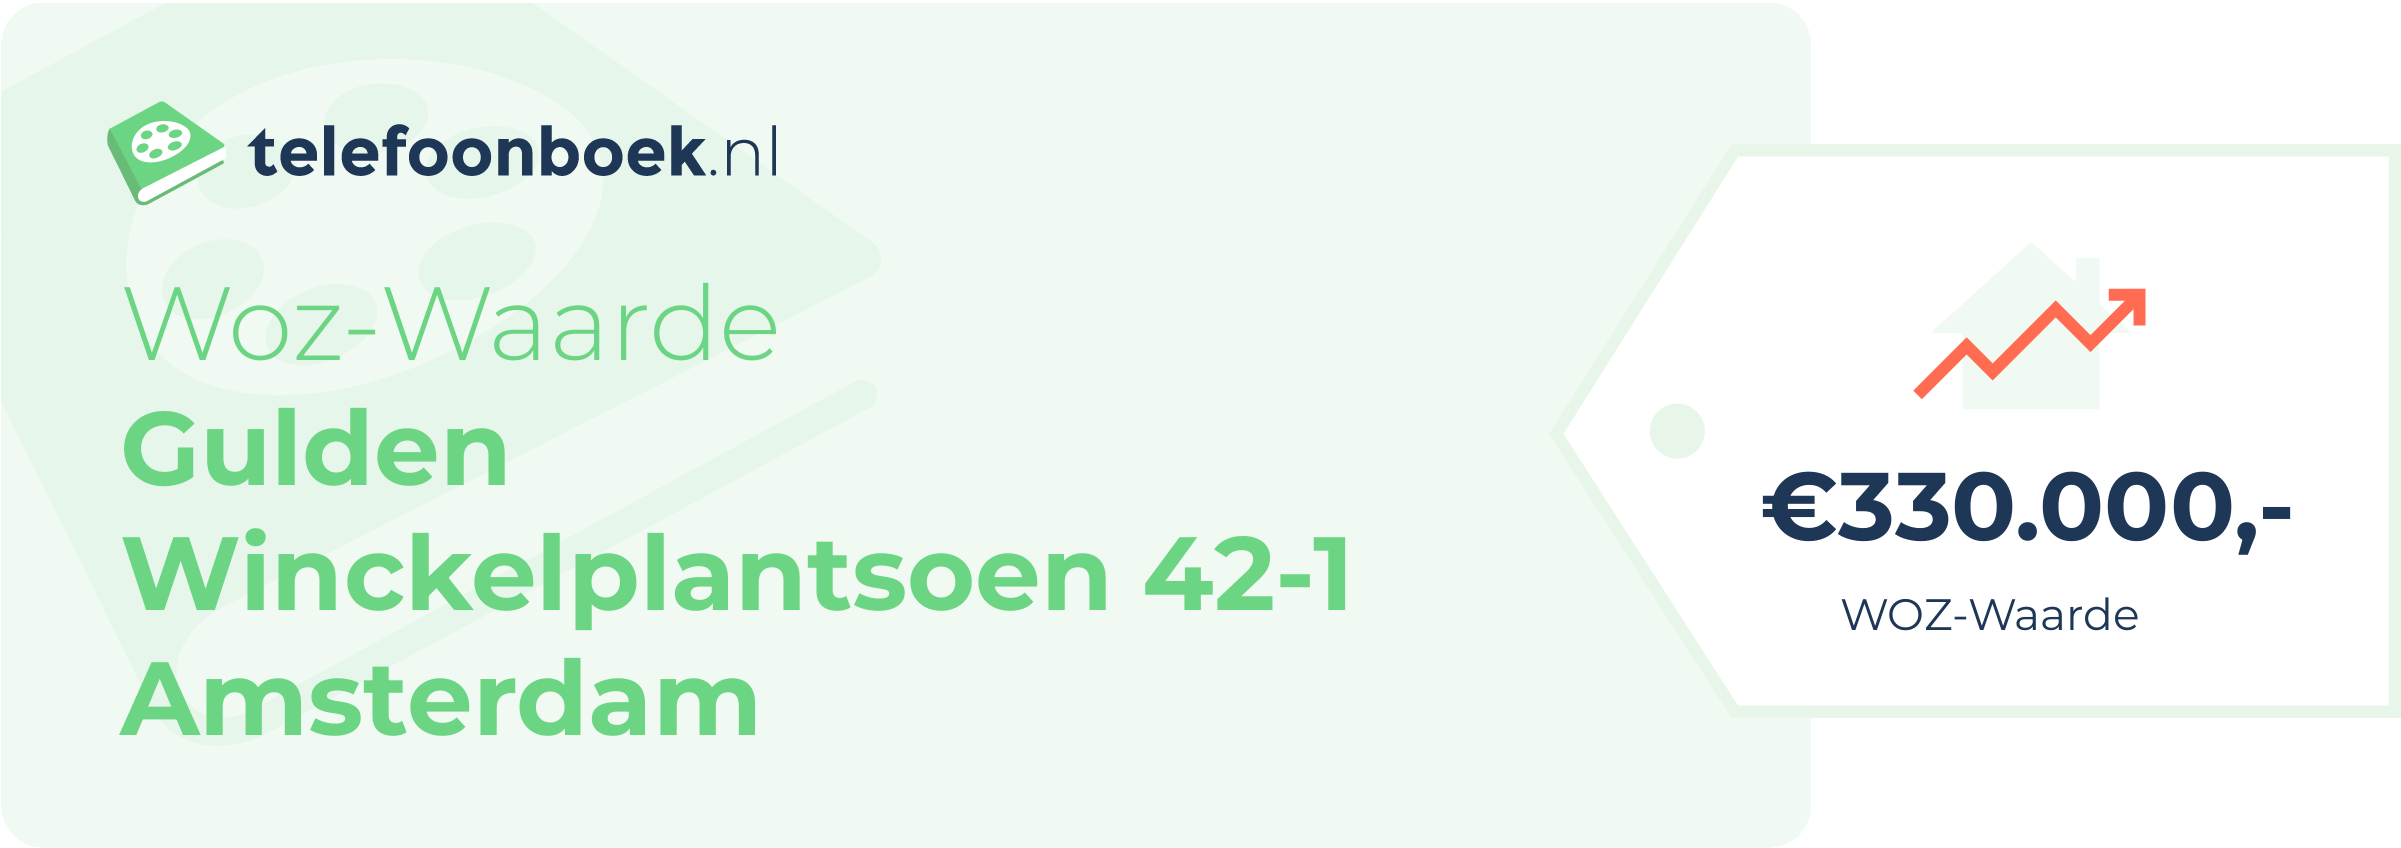 WOZ-waarde Gulden Winckelplantsoen 42-1 Amsterdam